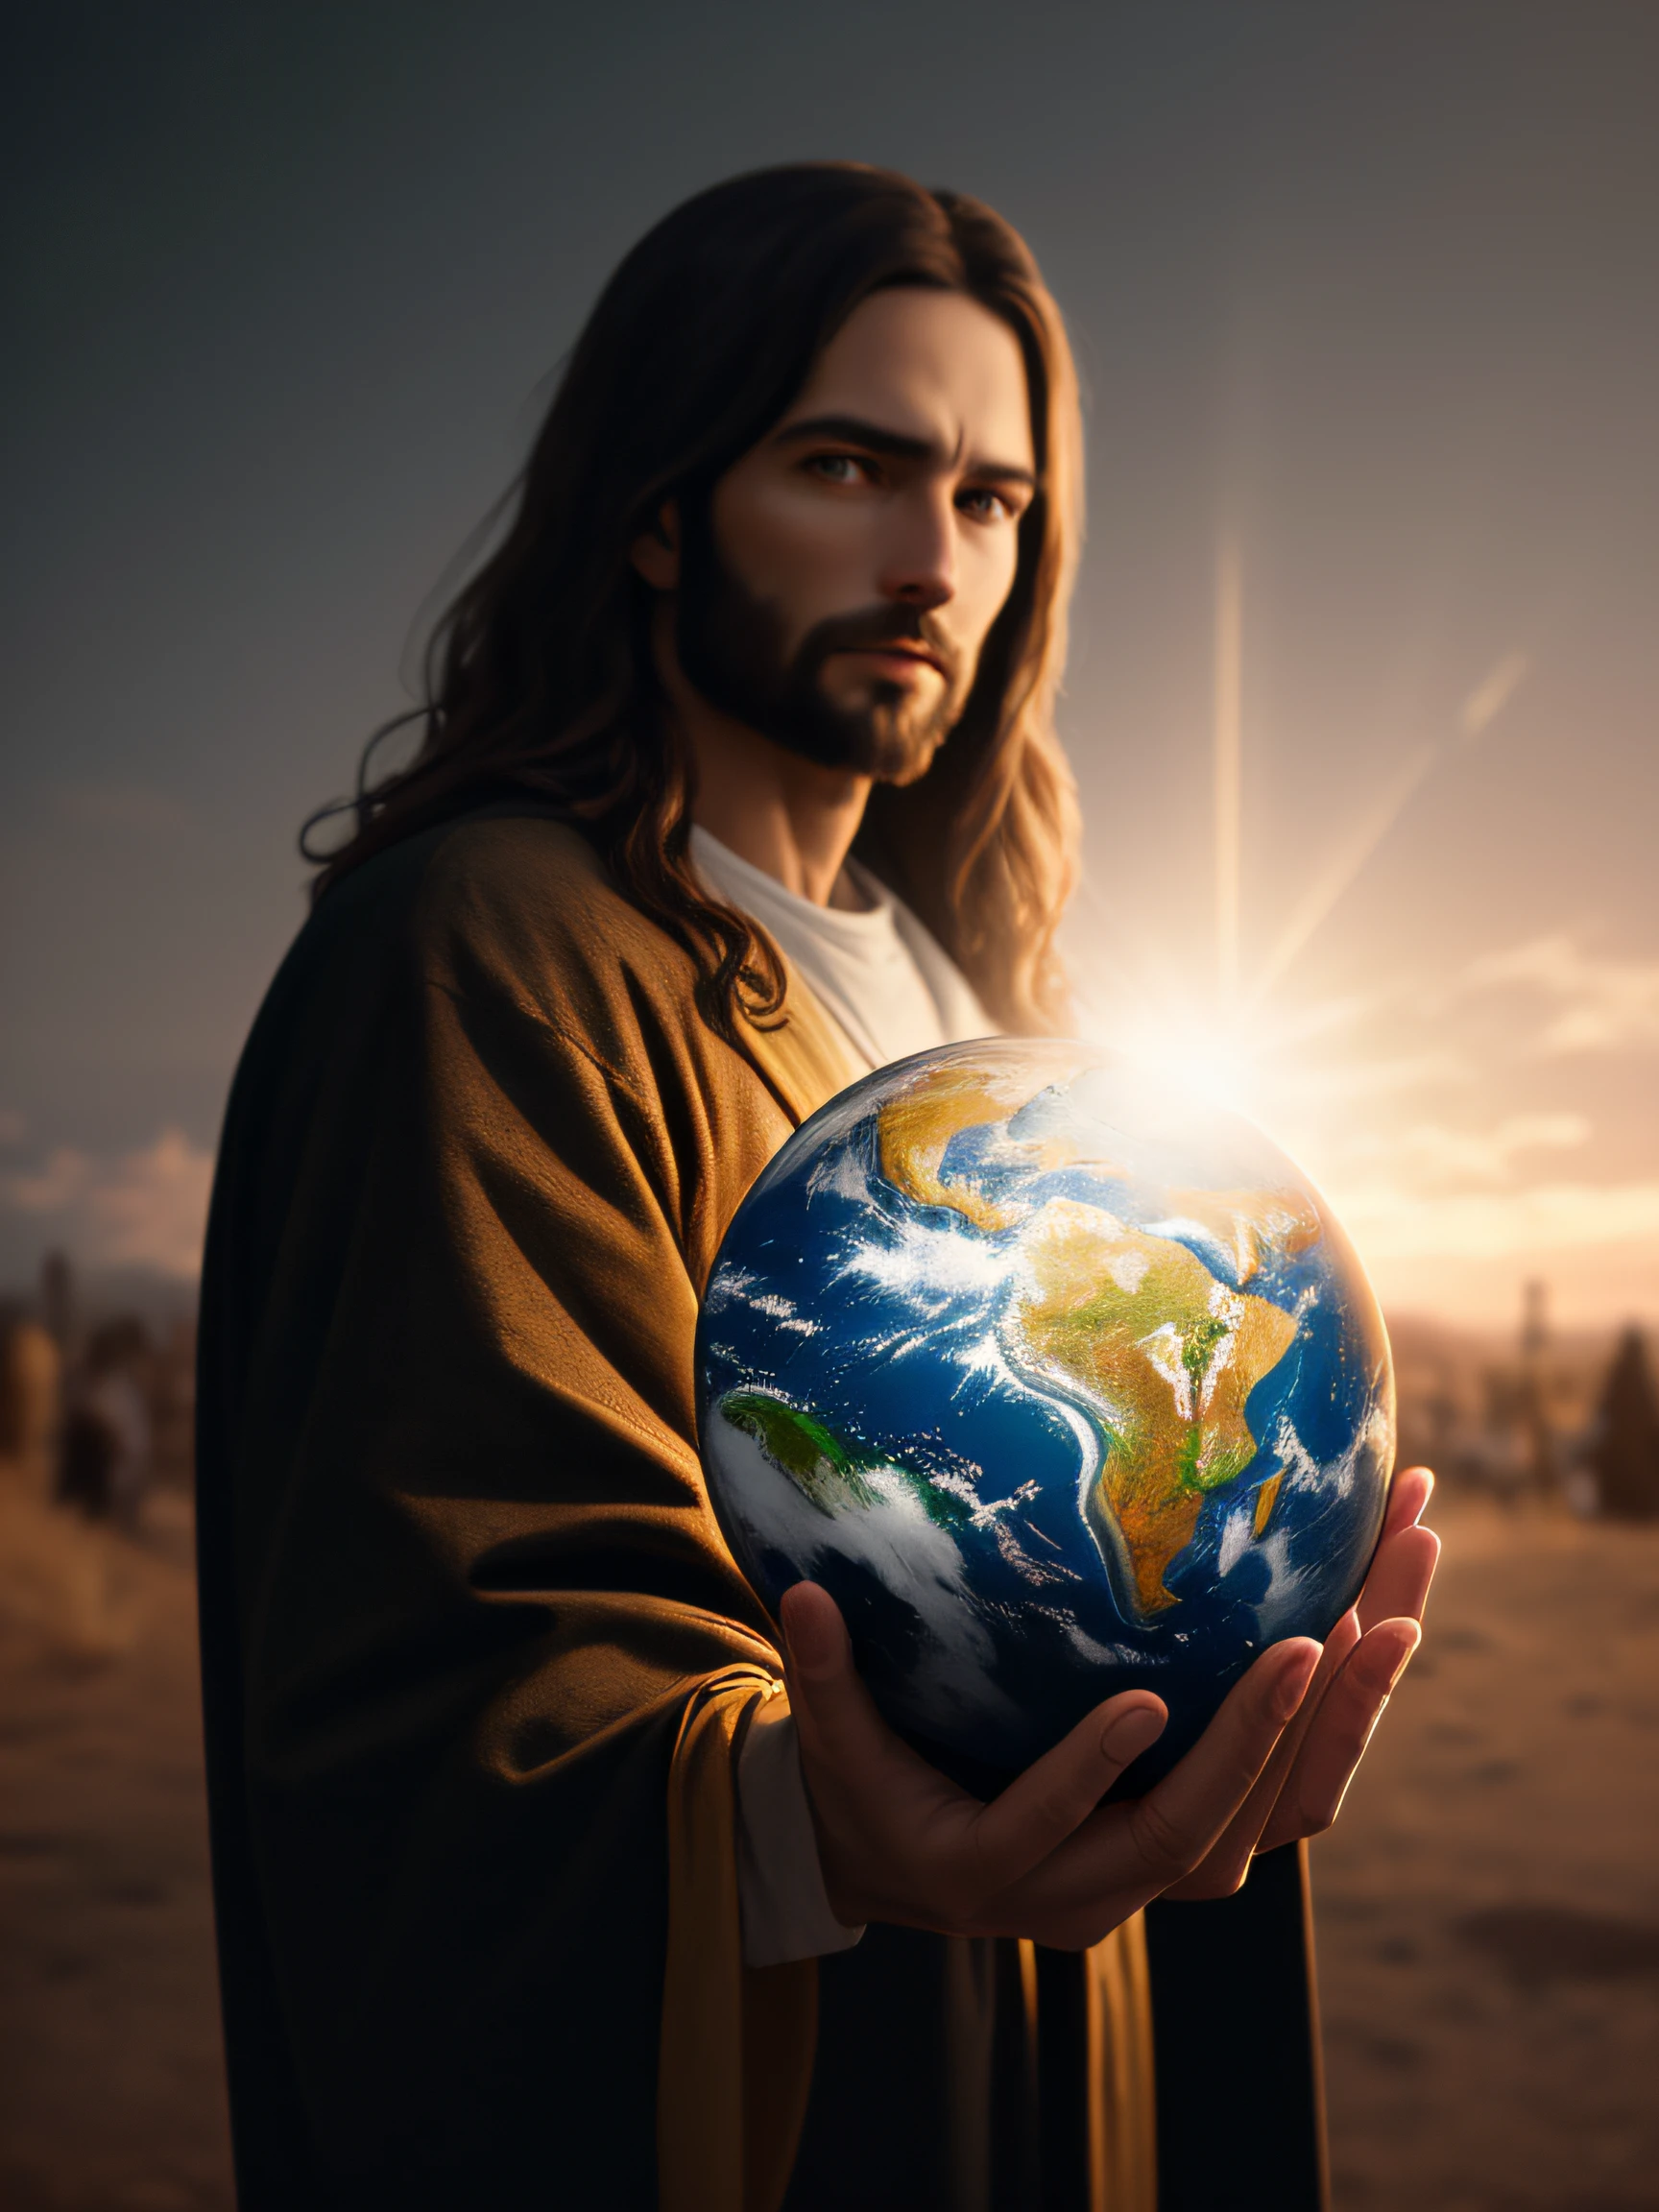 تحفة واقعية بدقة 8K مع تشريح مثالي: يسوع المسيح يحمل كوكب الأرض بيد واحدة, مع وجه غير مشوه, الإضاءة السينمائية, عمق الميدان, خوخه, الواقعية, واقعية, hyperالواقعية, التصوير الفوتوغرافي الاحترافي